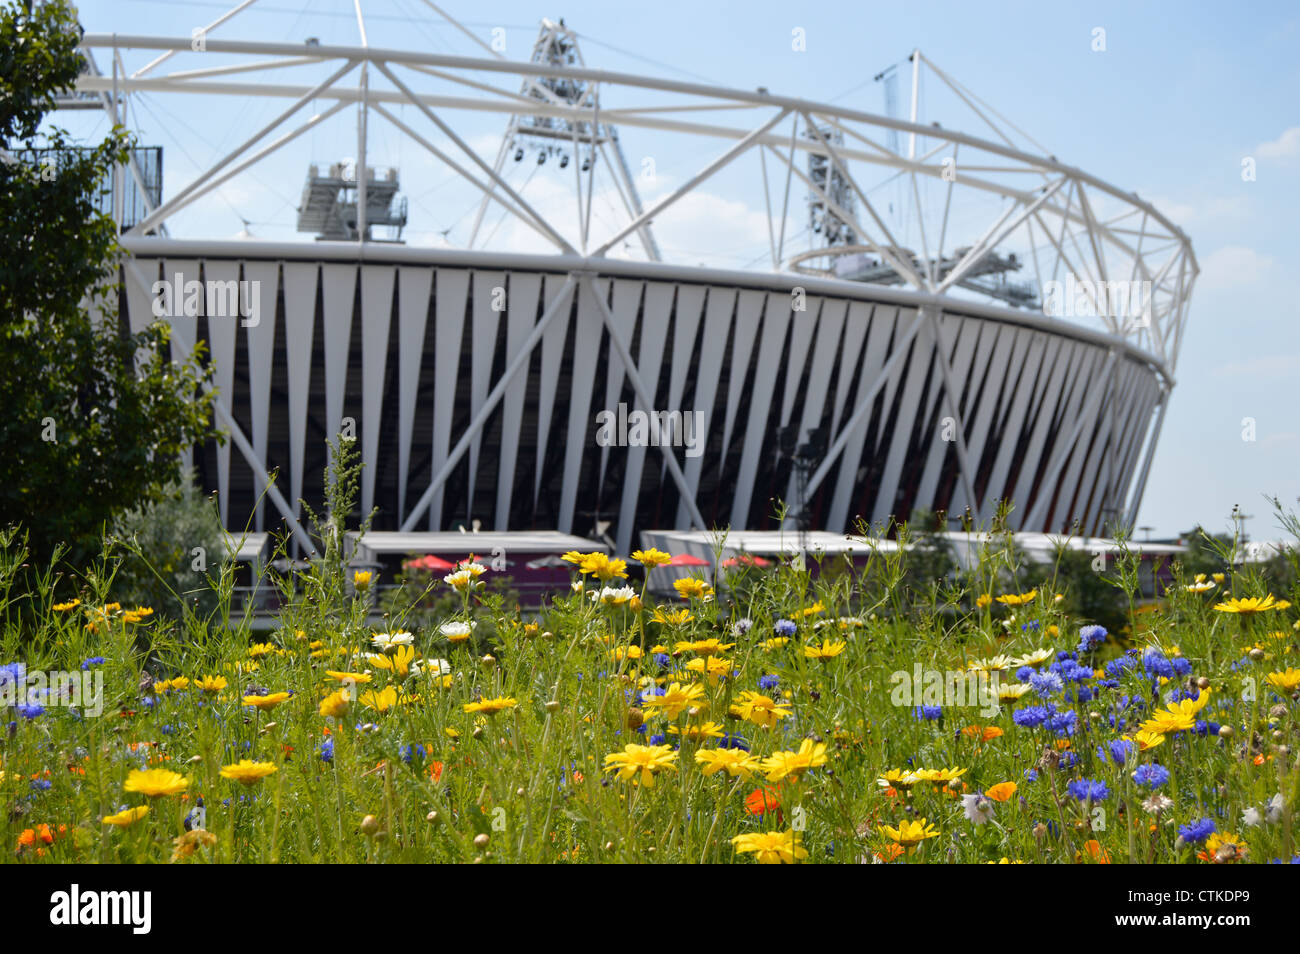 London 2012 Olympische Stadion, Stratford, London, UK mit Blumen im Vordergrund Stockfoto